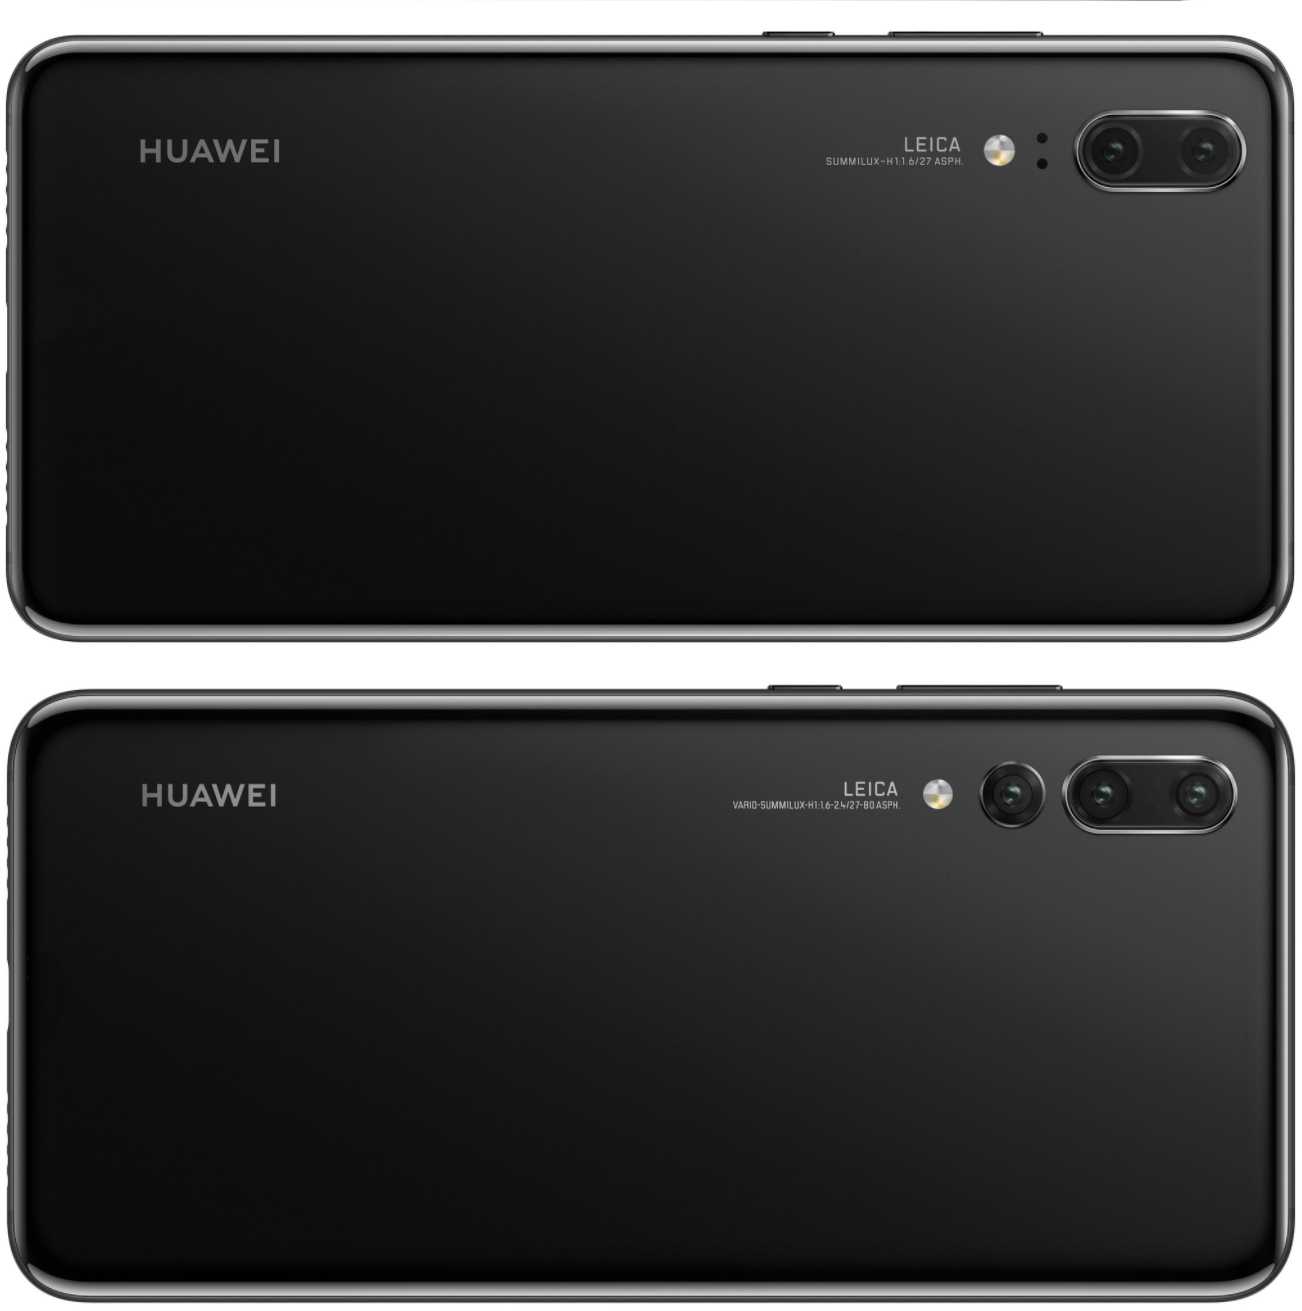 Обзор смартфона huawei p9: камера от leica. cтатьи, тесты, обзоры